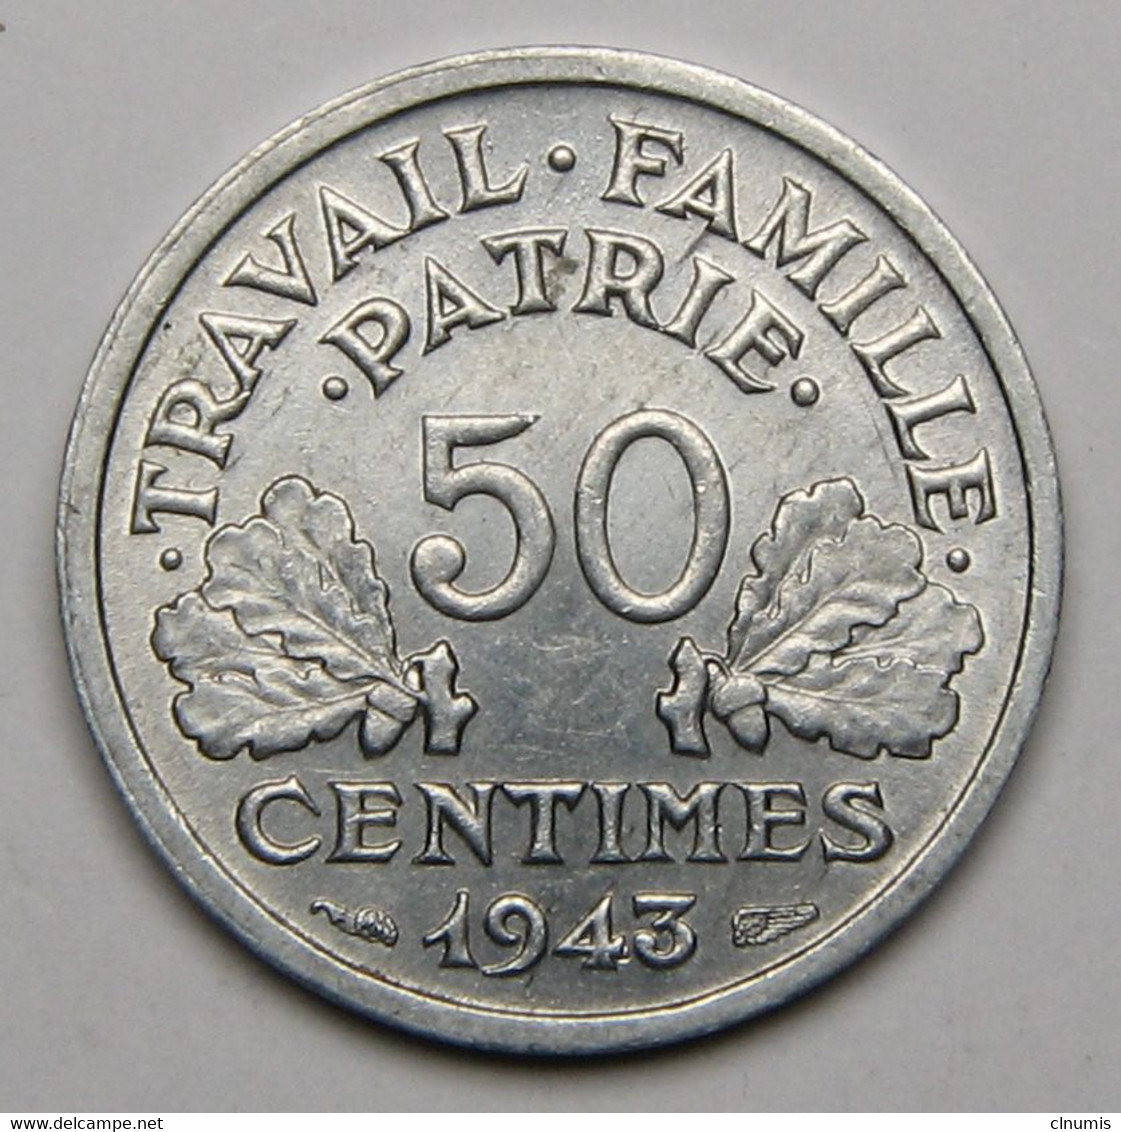 50 Centimes Francisque, Légère, Aluminium, 1943 - Etat Français - 50 Centimes